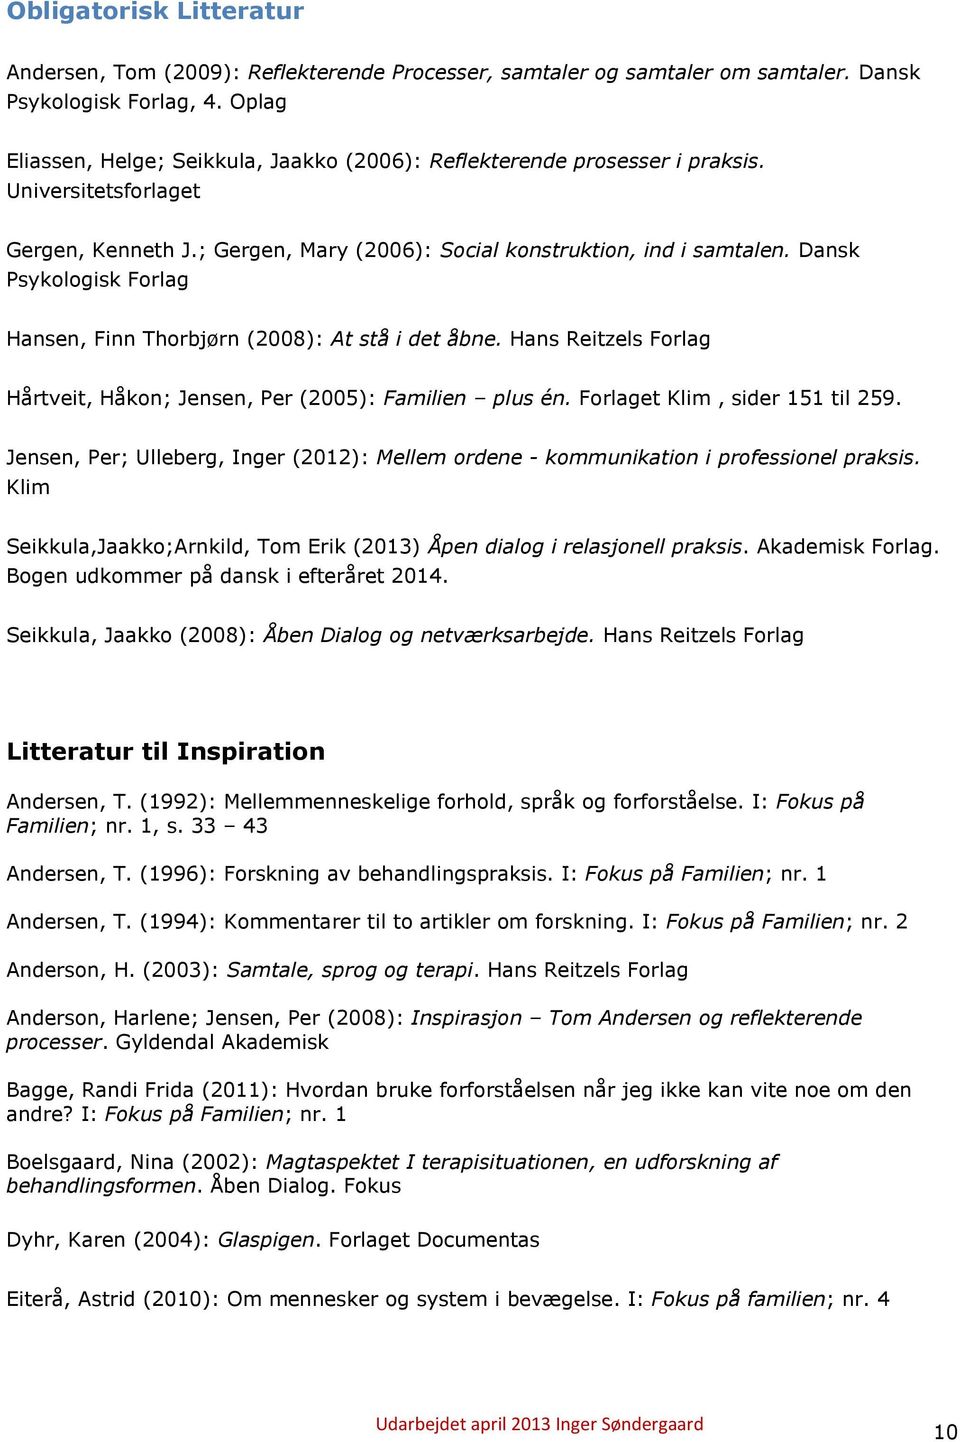 Dansk Psykologisk Forlag Hansen, Finn Thorbjørn (2008): At stå i det åbne. Hans Reitzels Forlag Hårtveit, Håkon; Jensen, Per (2005): Familien plus én. Forlaget Klim, sider 151 til 259.